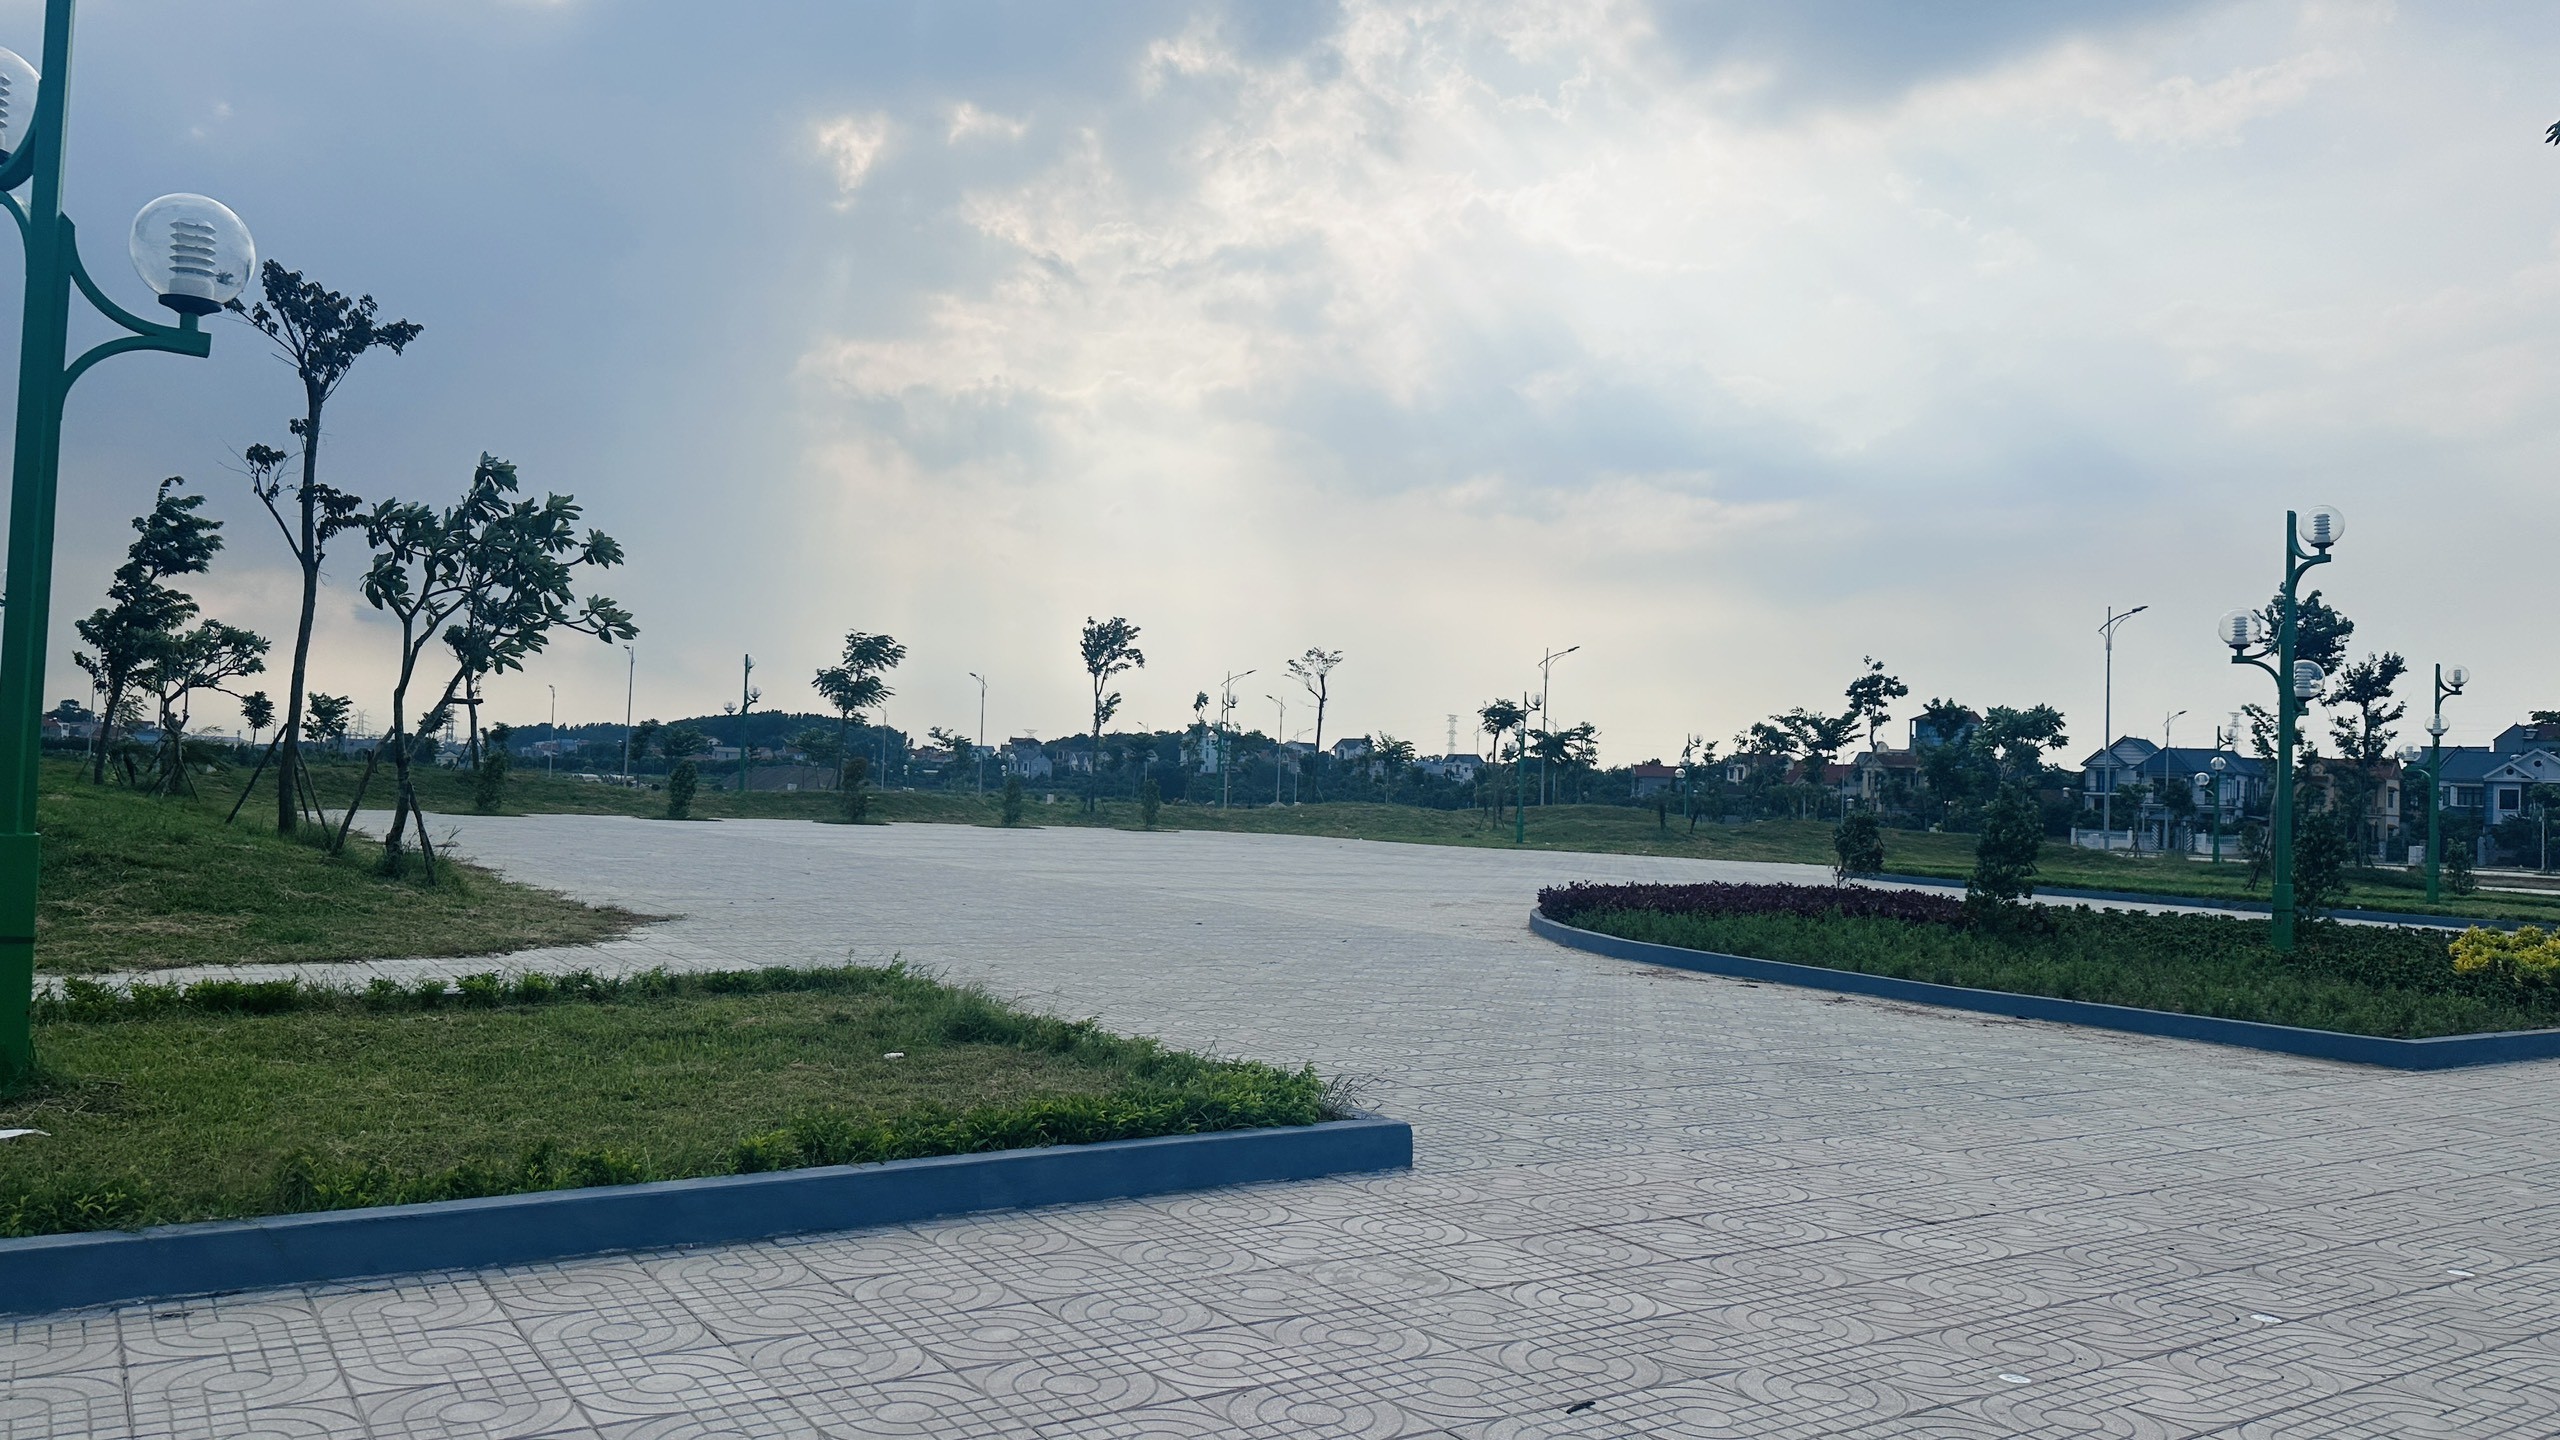 Bán Xuất ngoại giao Đất nền GIÁ RẺ dự án Thái Đào Residence Thôn Mầu – Mặt đường Ql 31 4